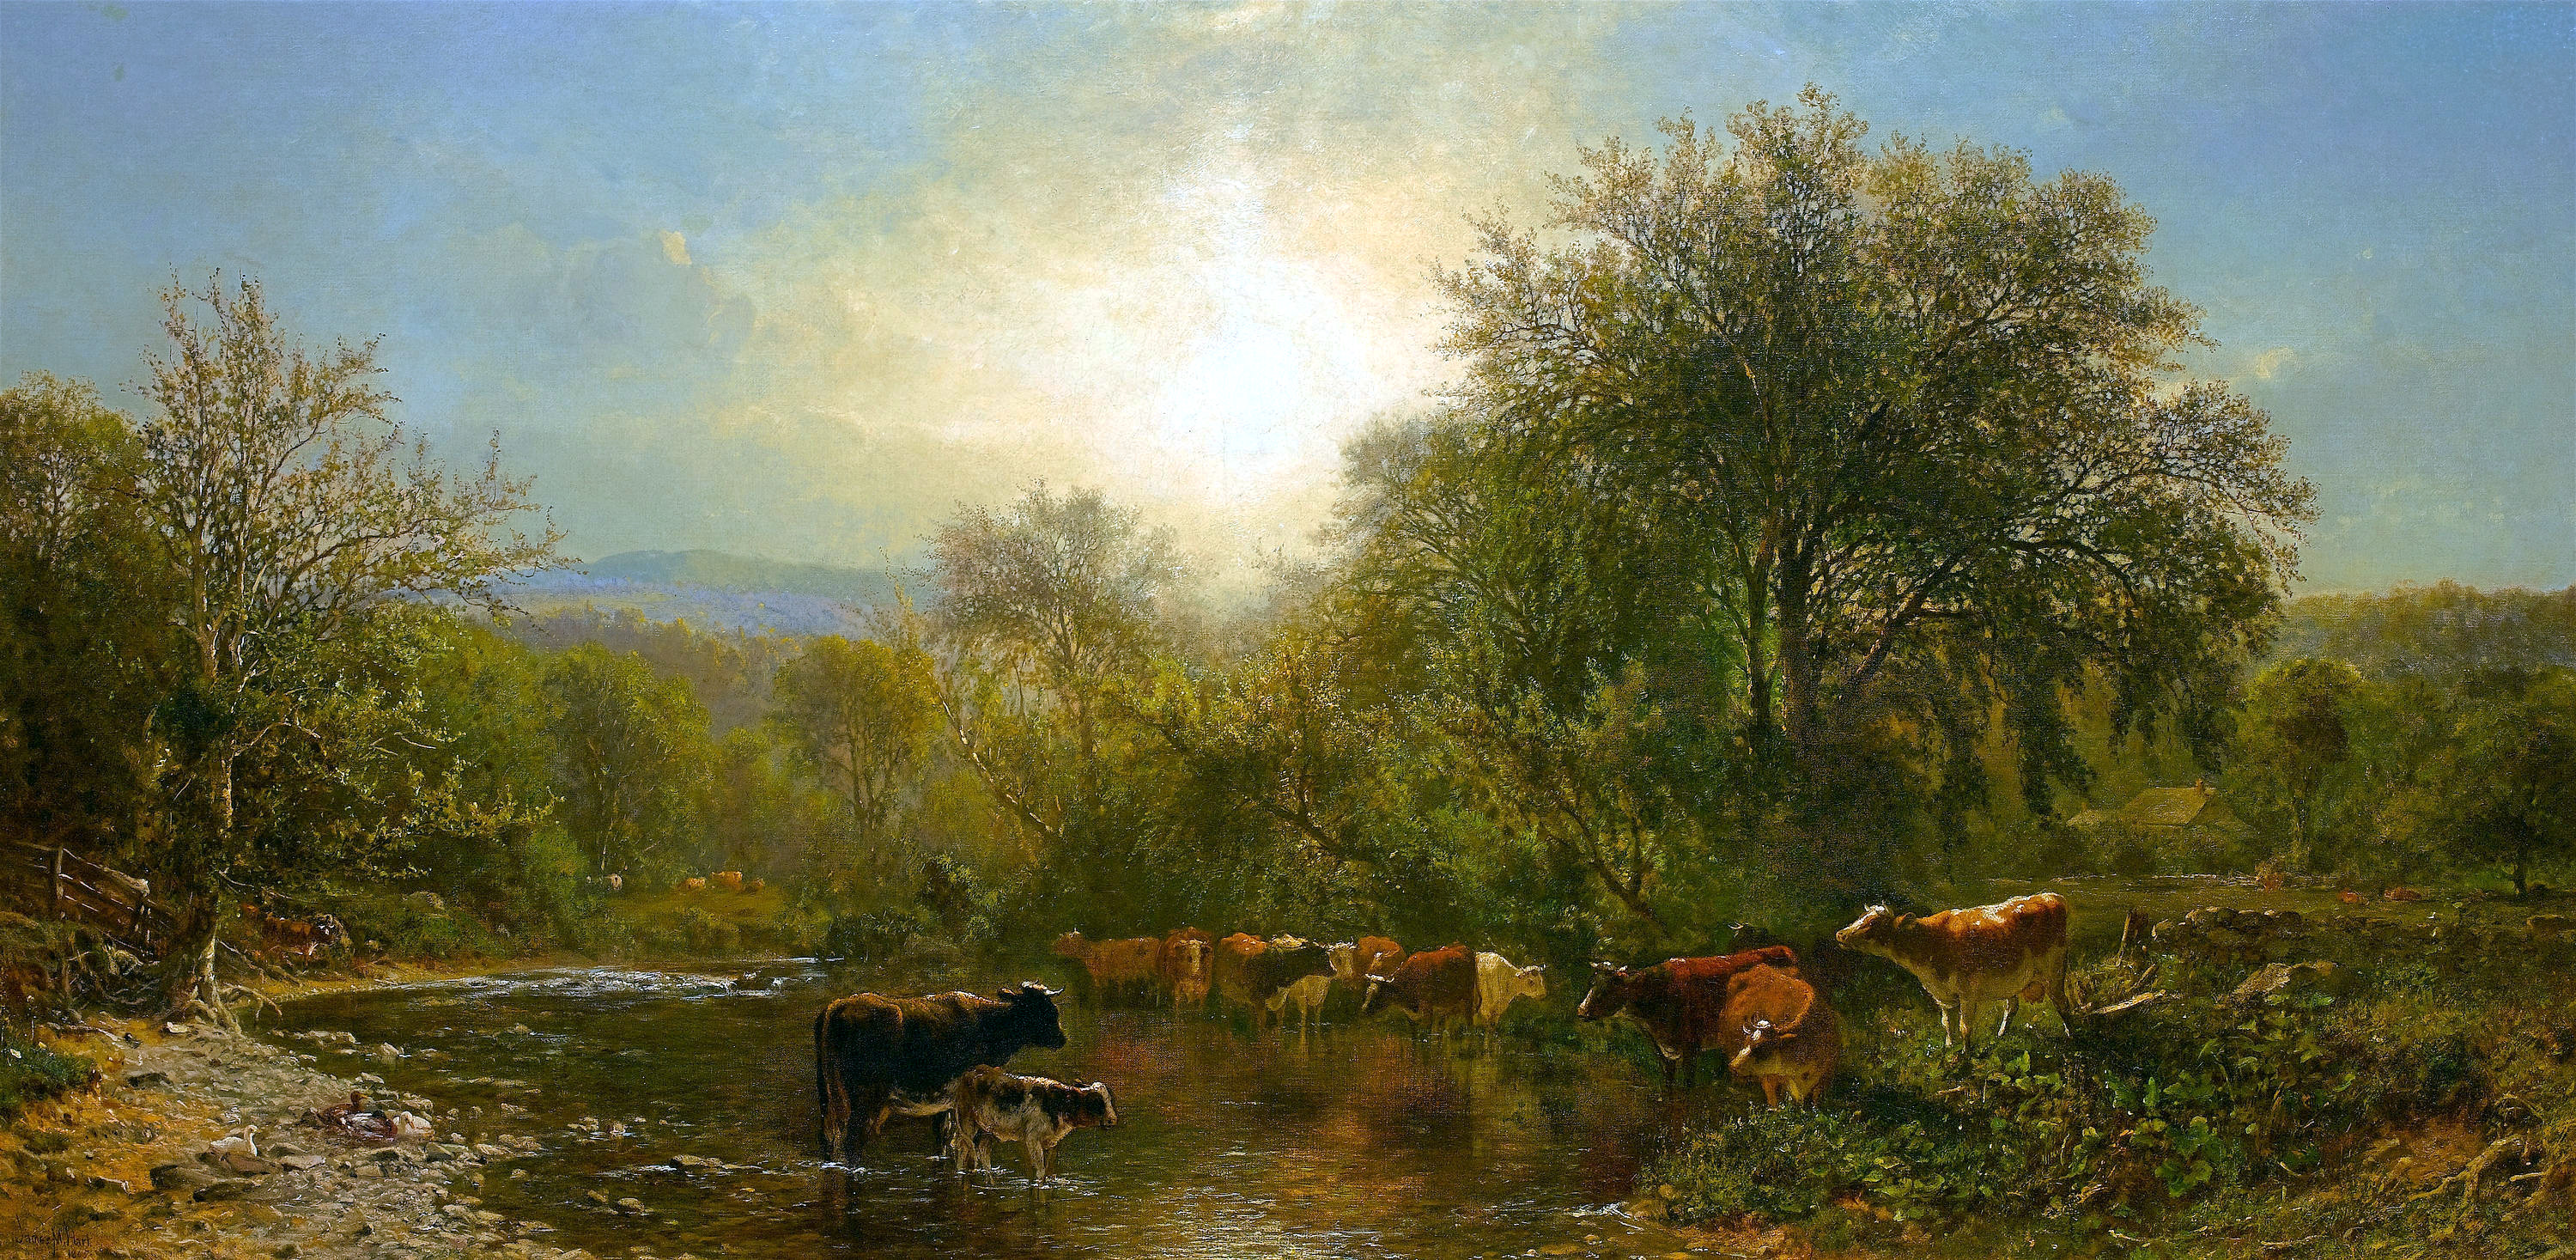 Cows Watering-James McDougal Hart-1865